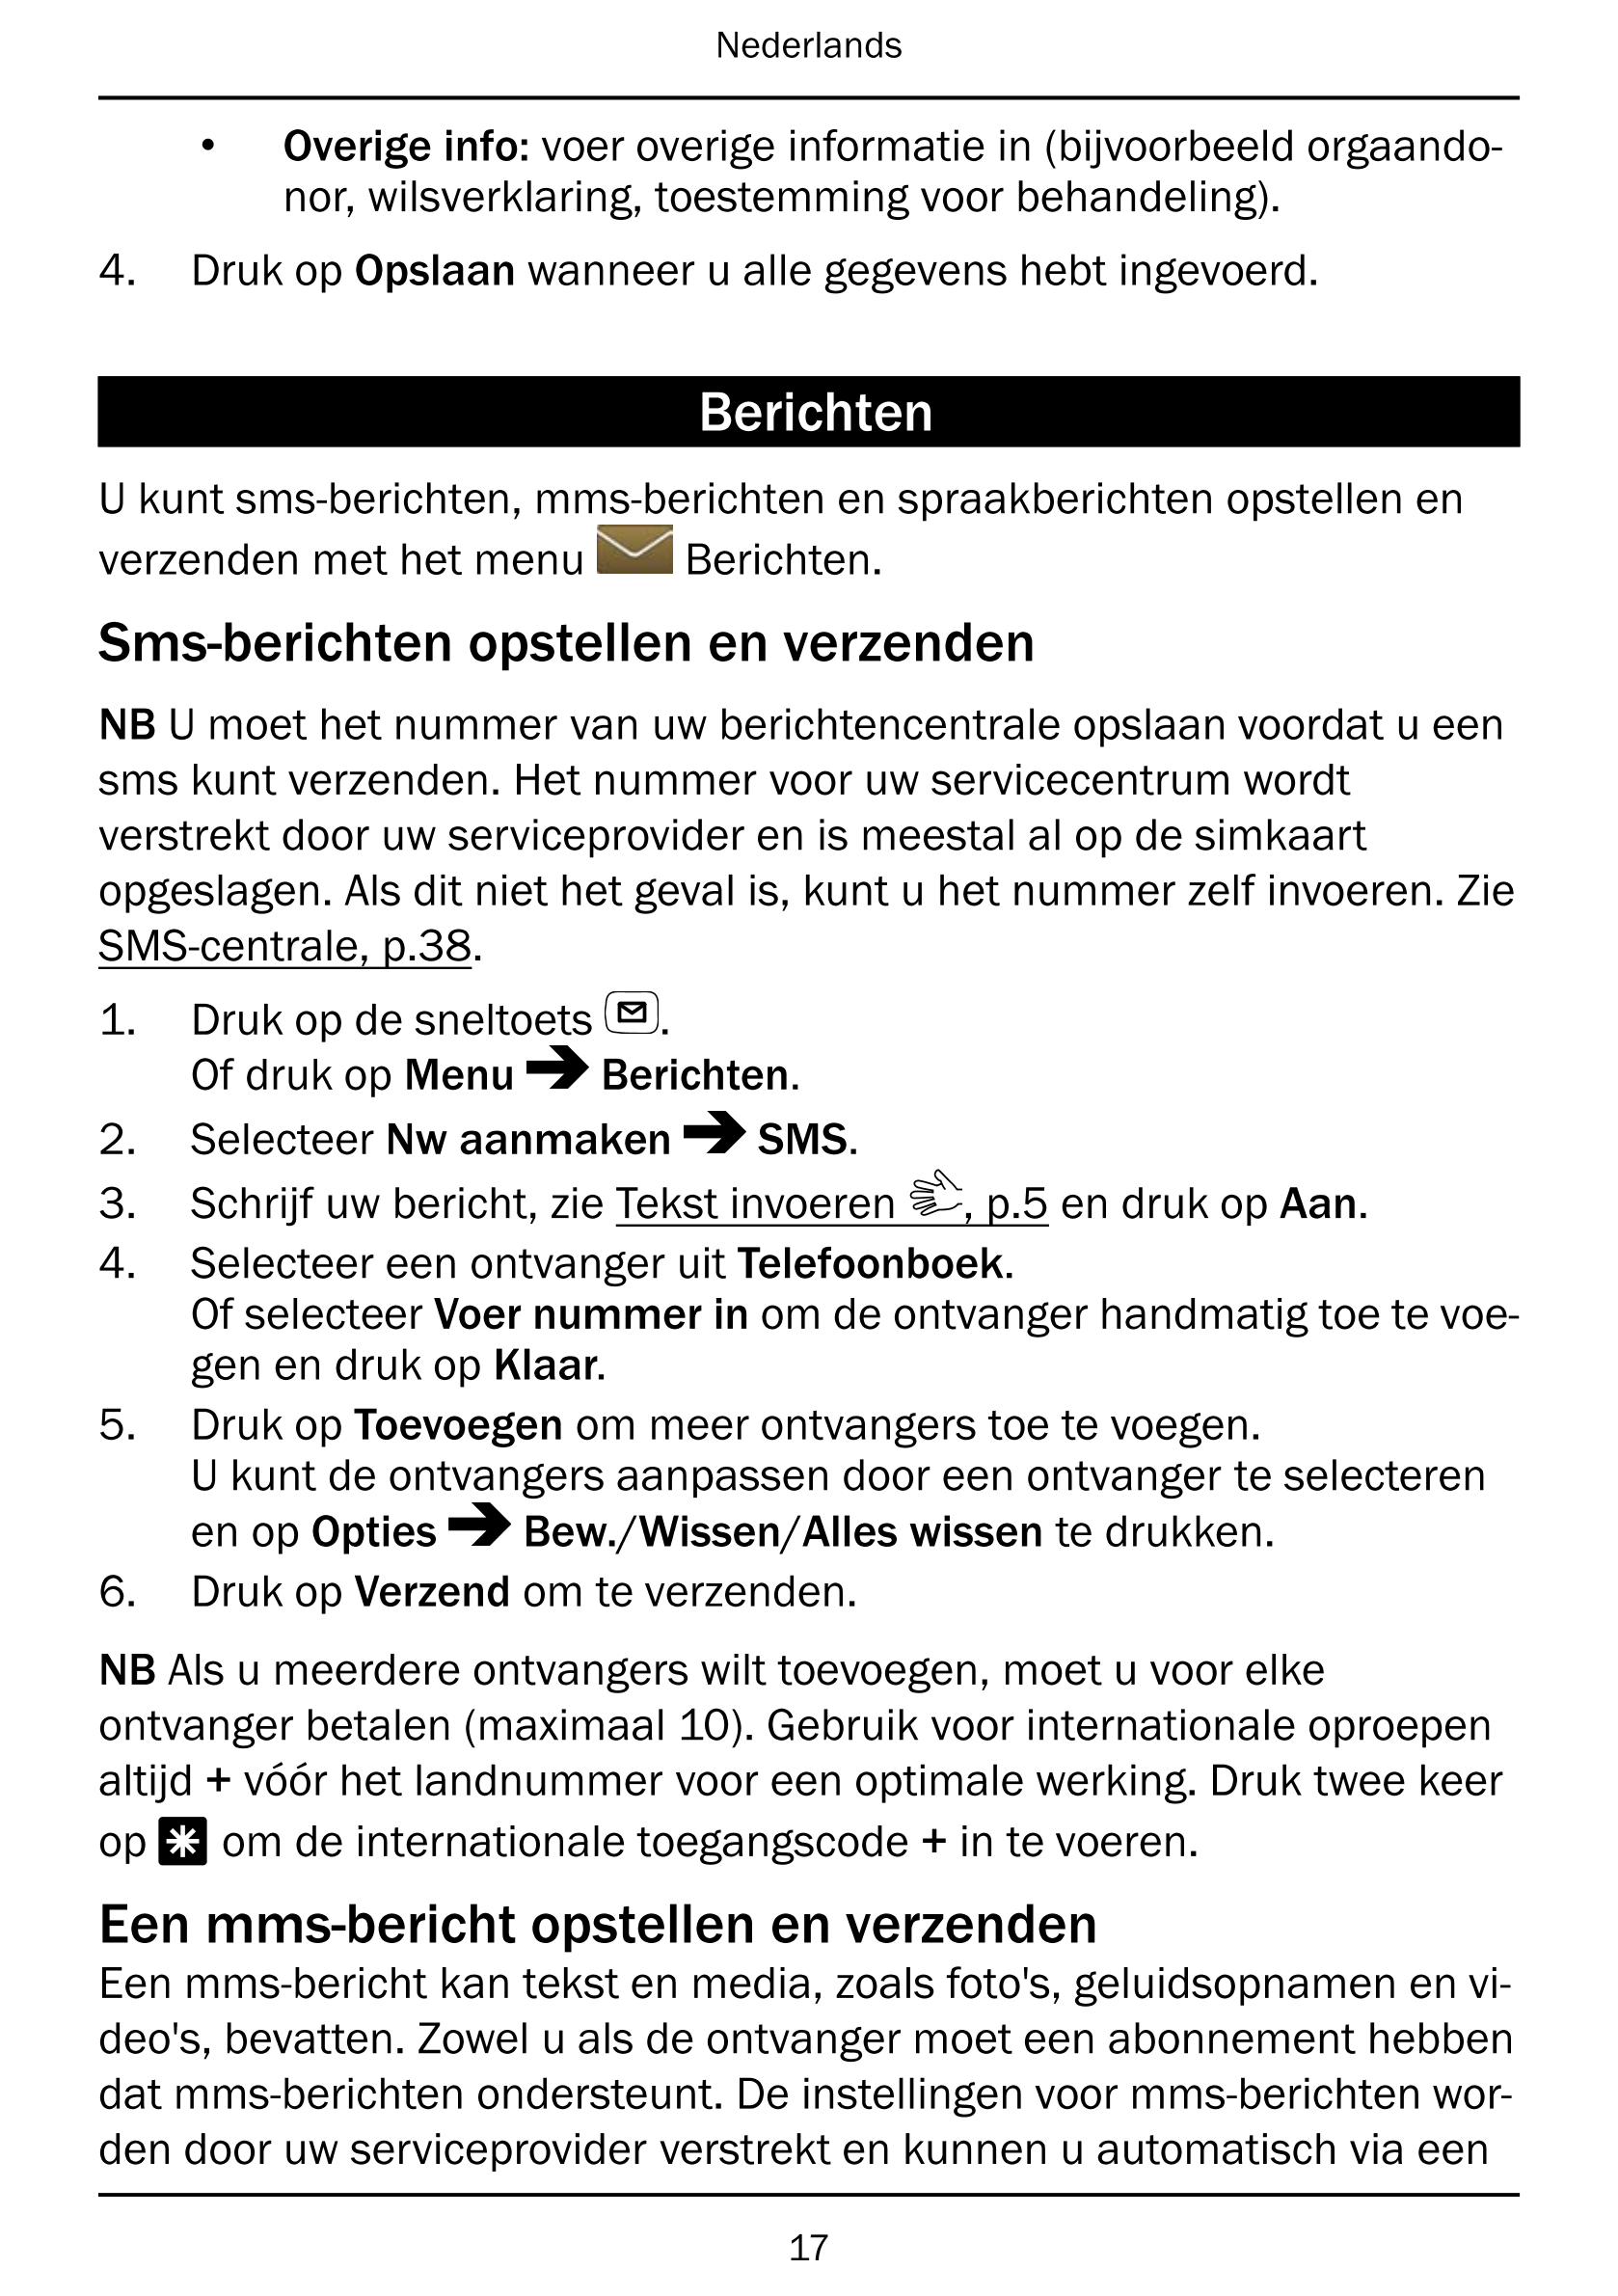 Nederlands
• Overige info: voer overige informatie in (bijvoorbeeld orgaando-
nor, wilsverklaring, toestemming voor behandeling)